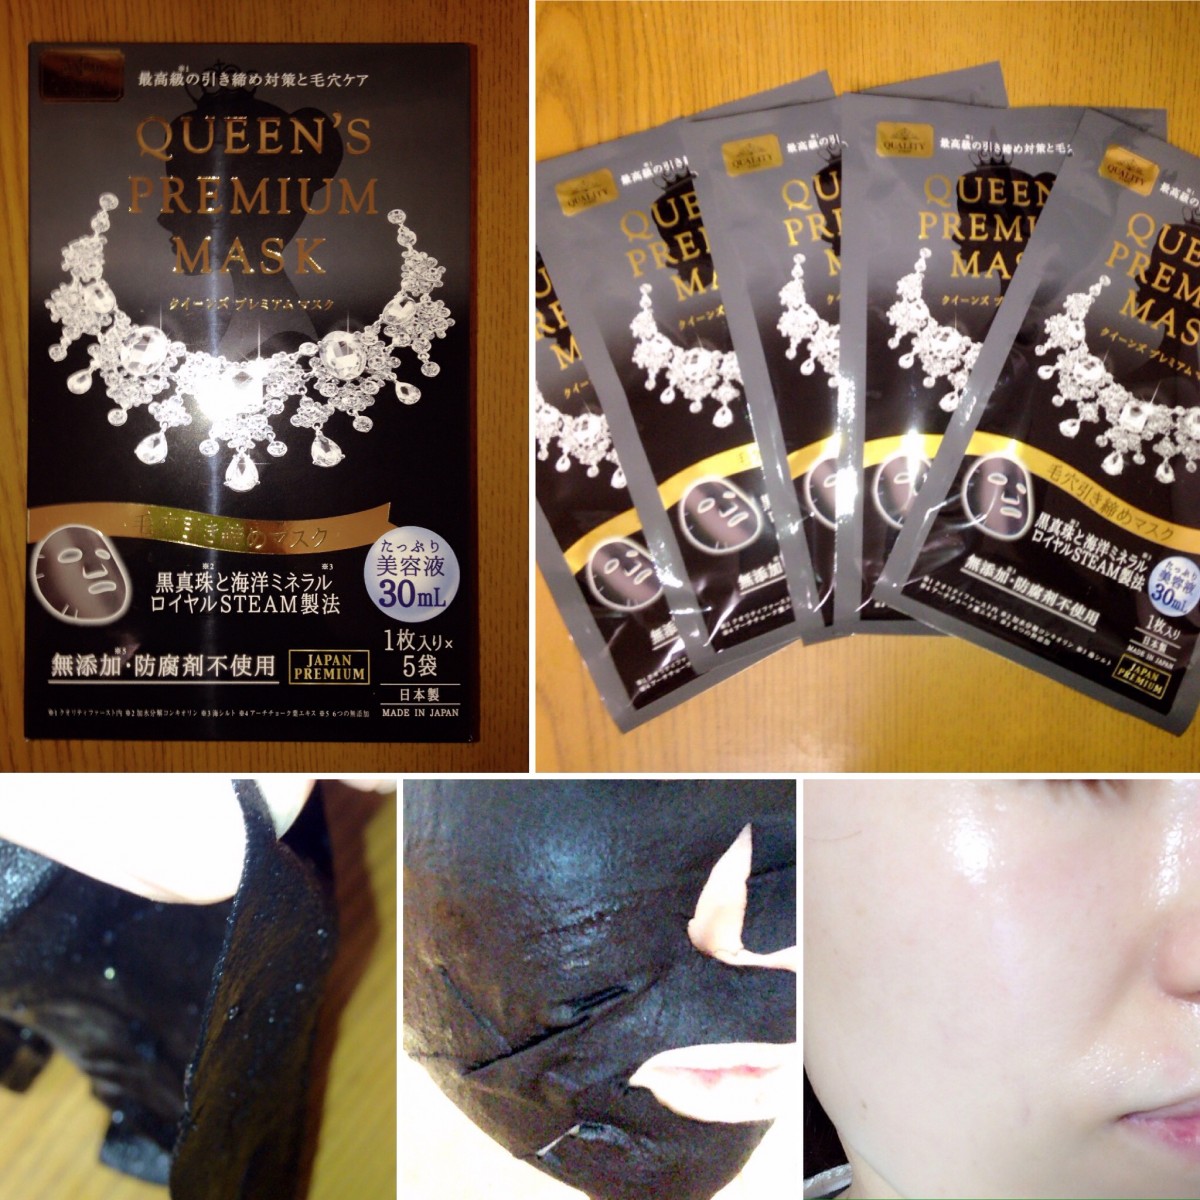 Mặt nạ Quality First Queen’s Premium Mask Pore Tightening đen se khít lỗ chân lông